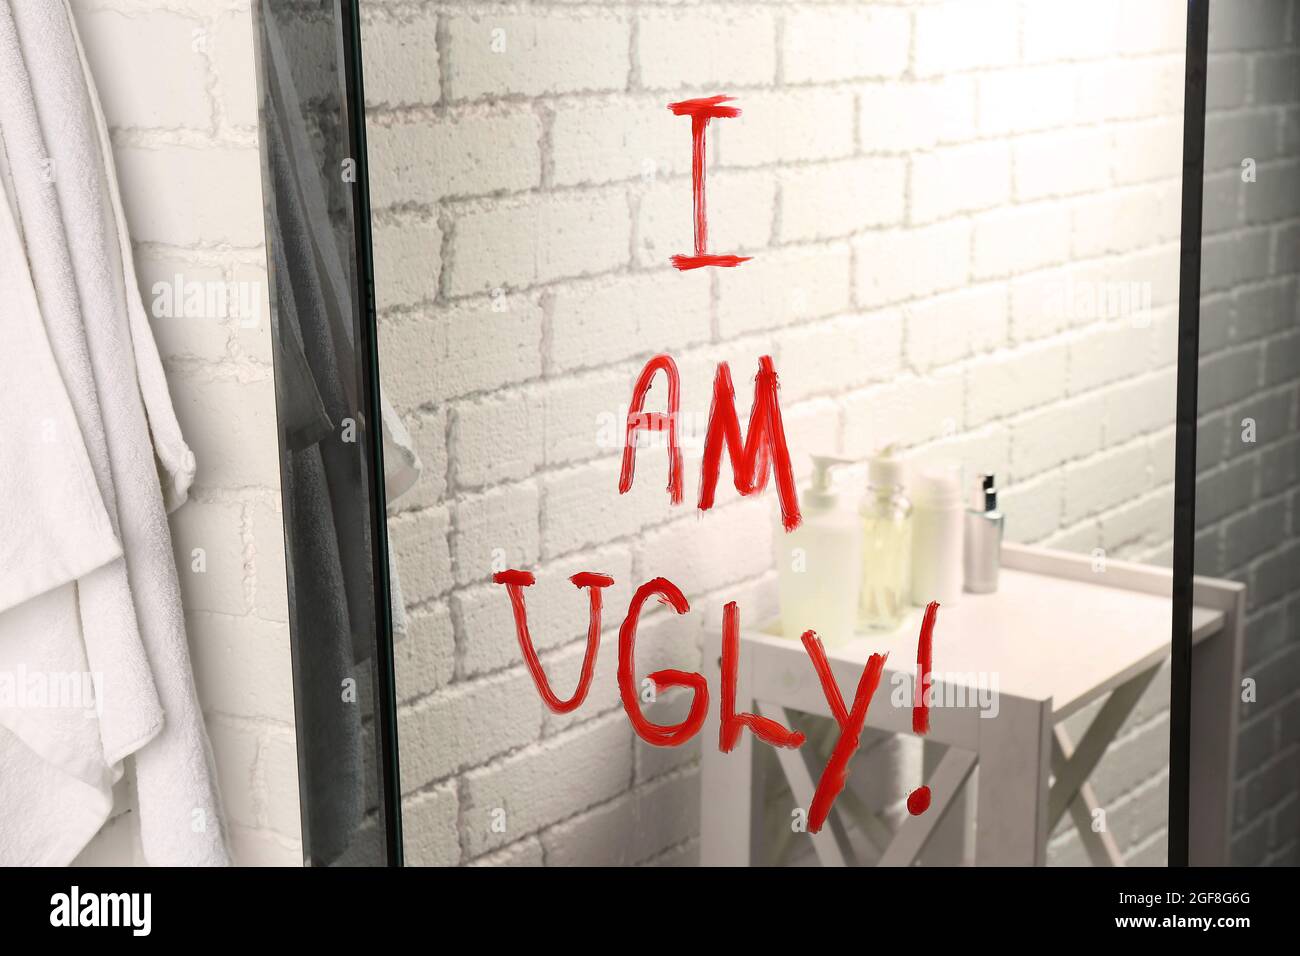 Soy feo texto escrito en el espejo del baño Fotografía de stock - Alamy